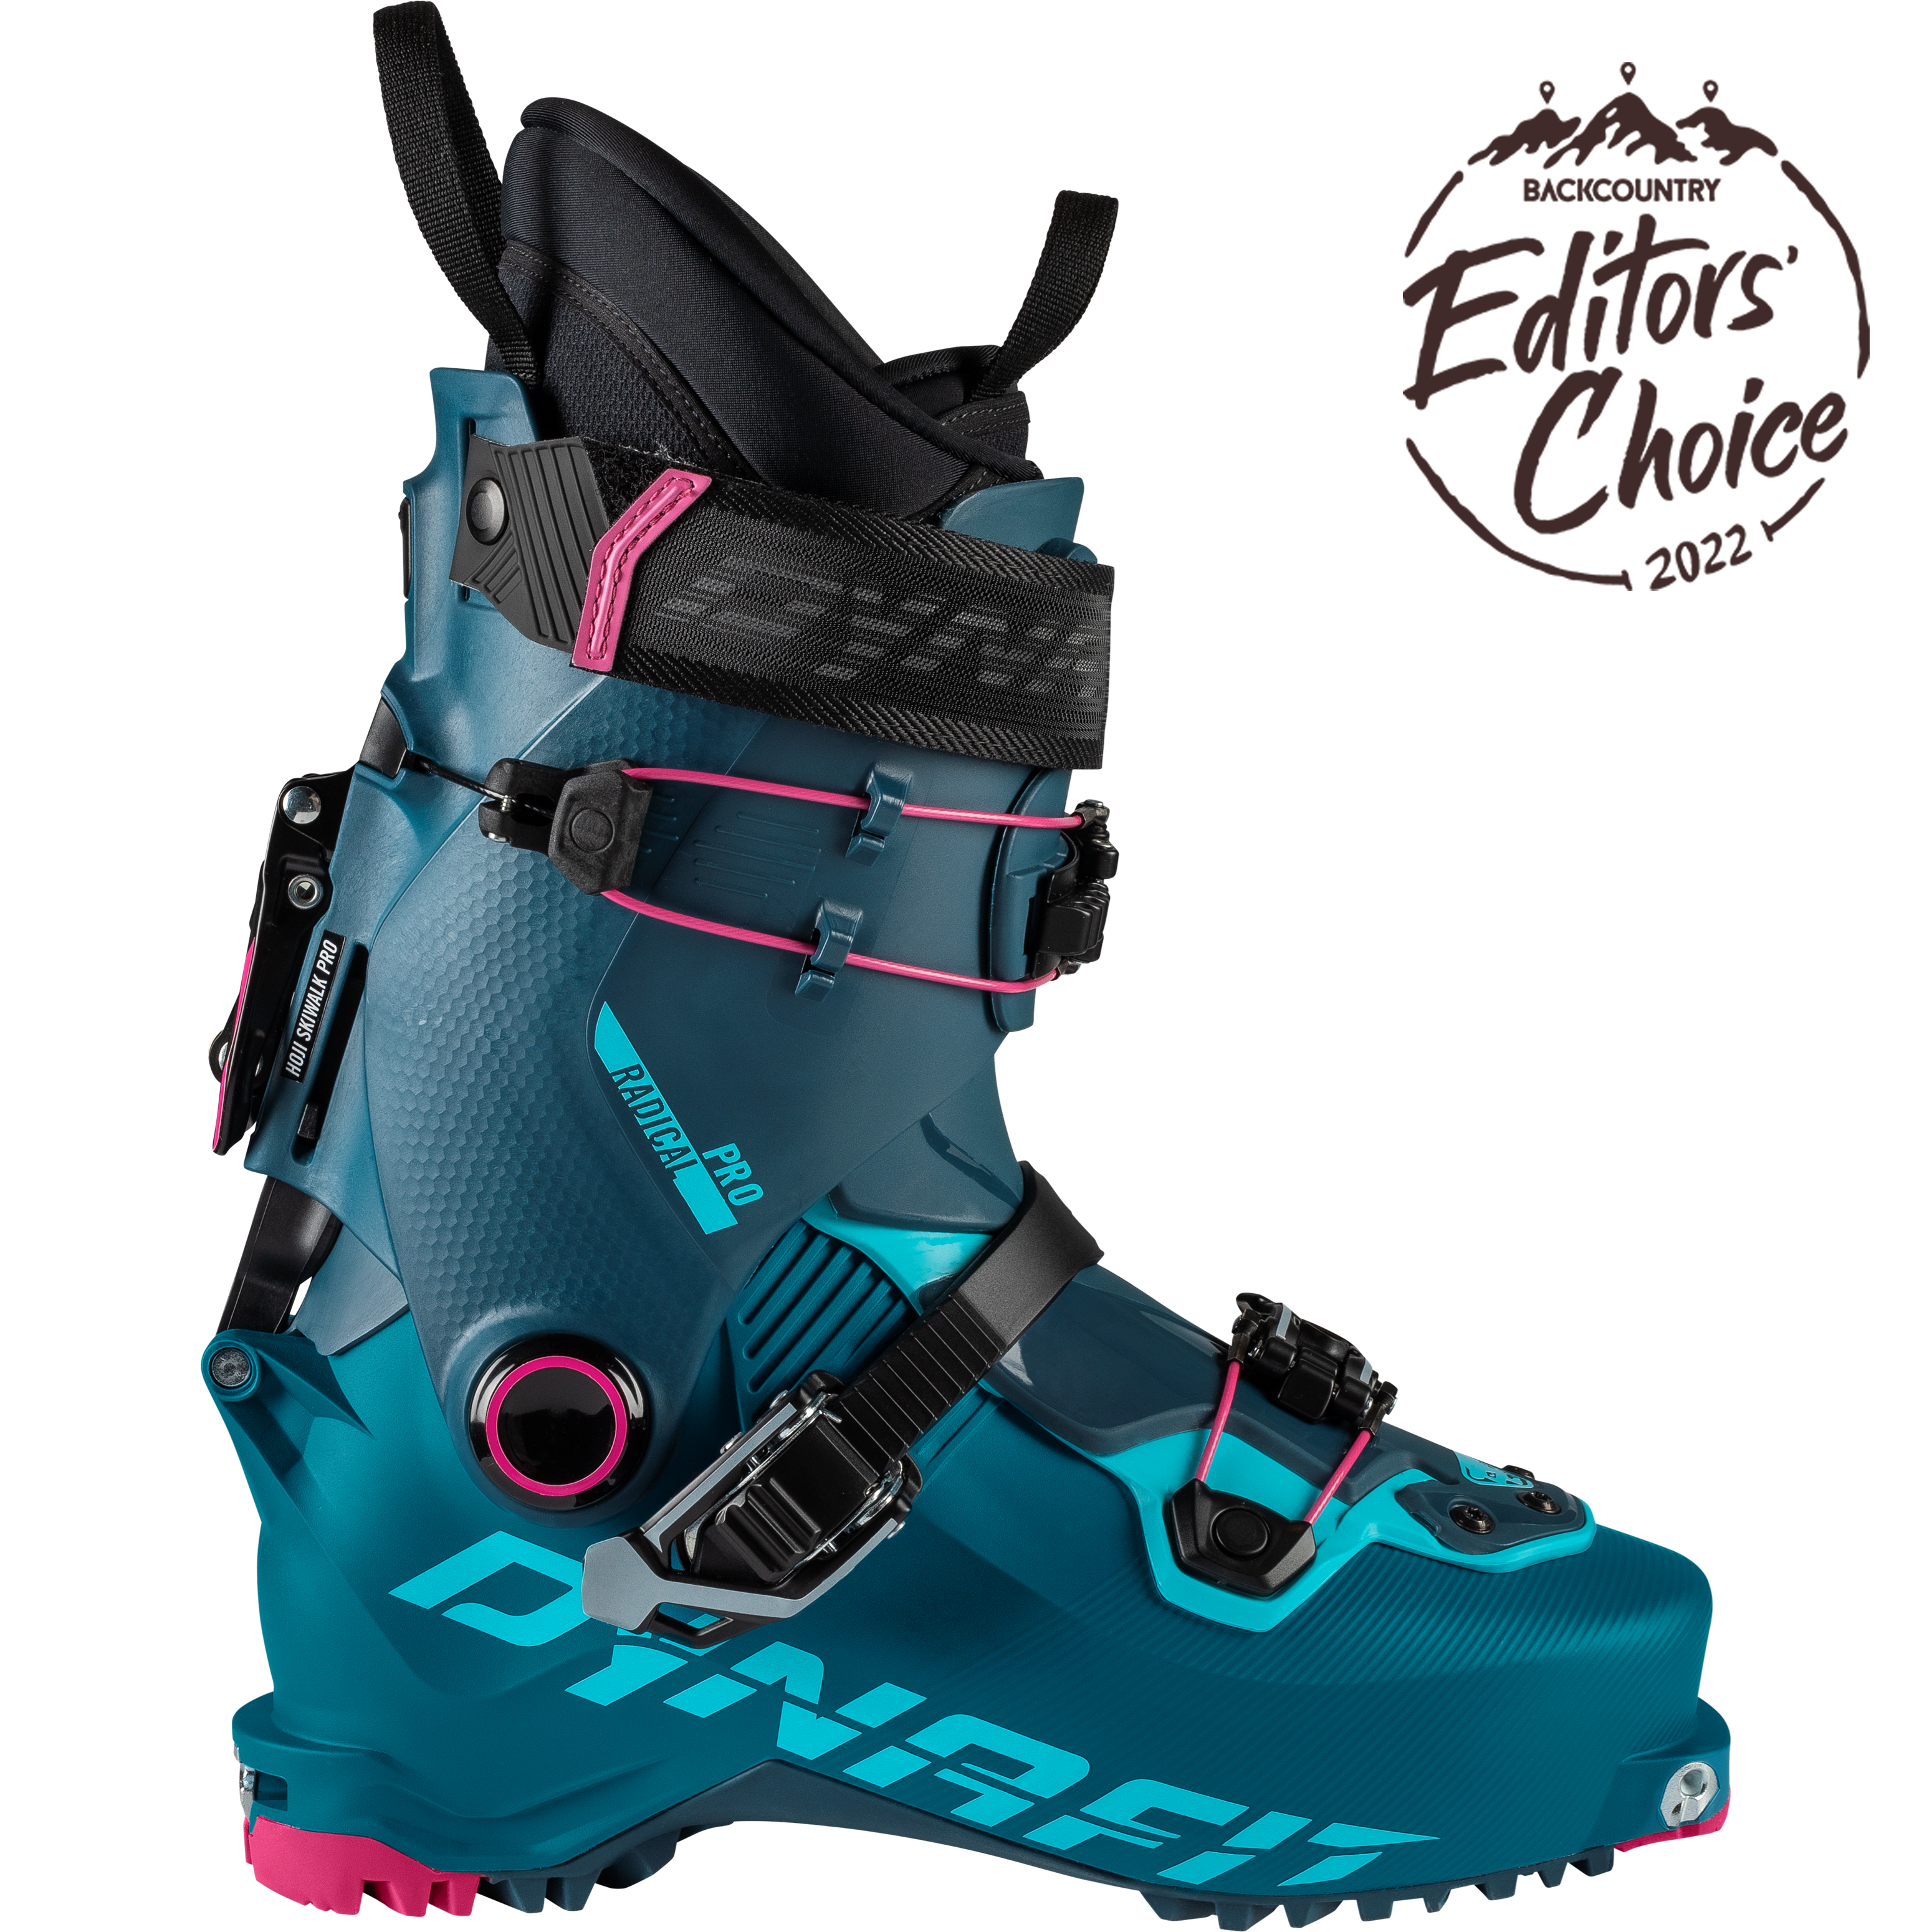 Chaussures de ski de rando Radical Pro femmes